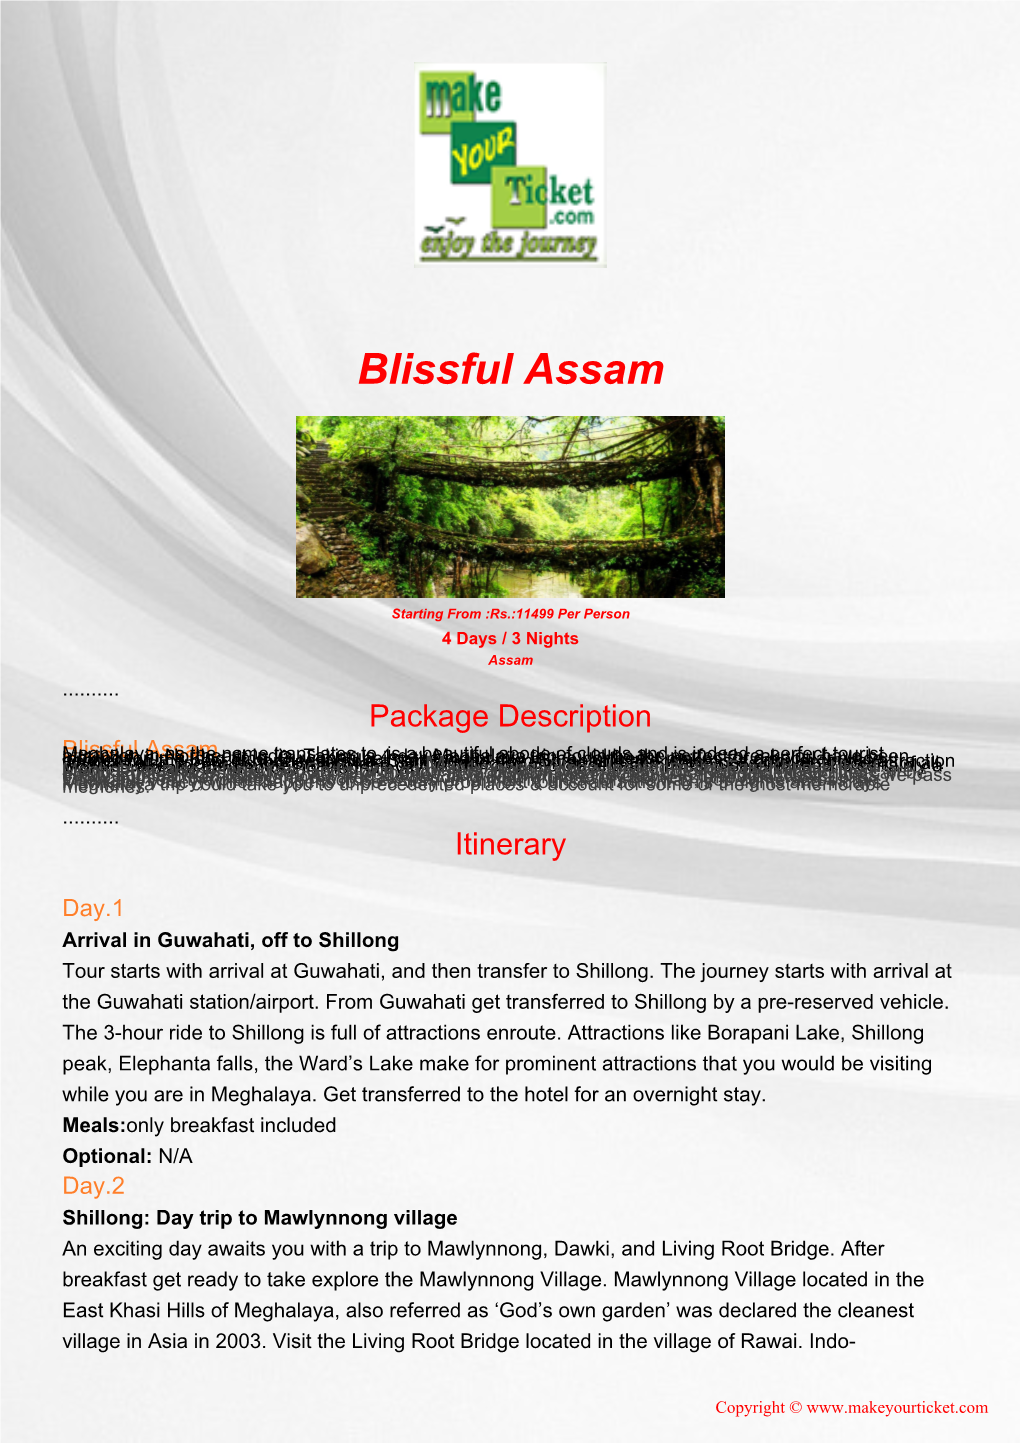 Blissful Assam